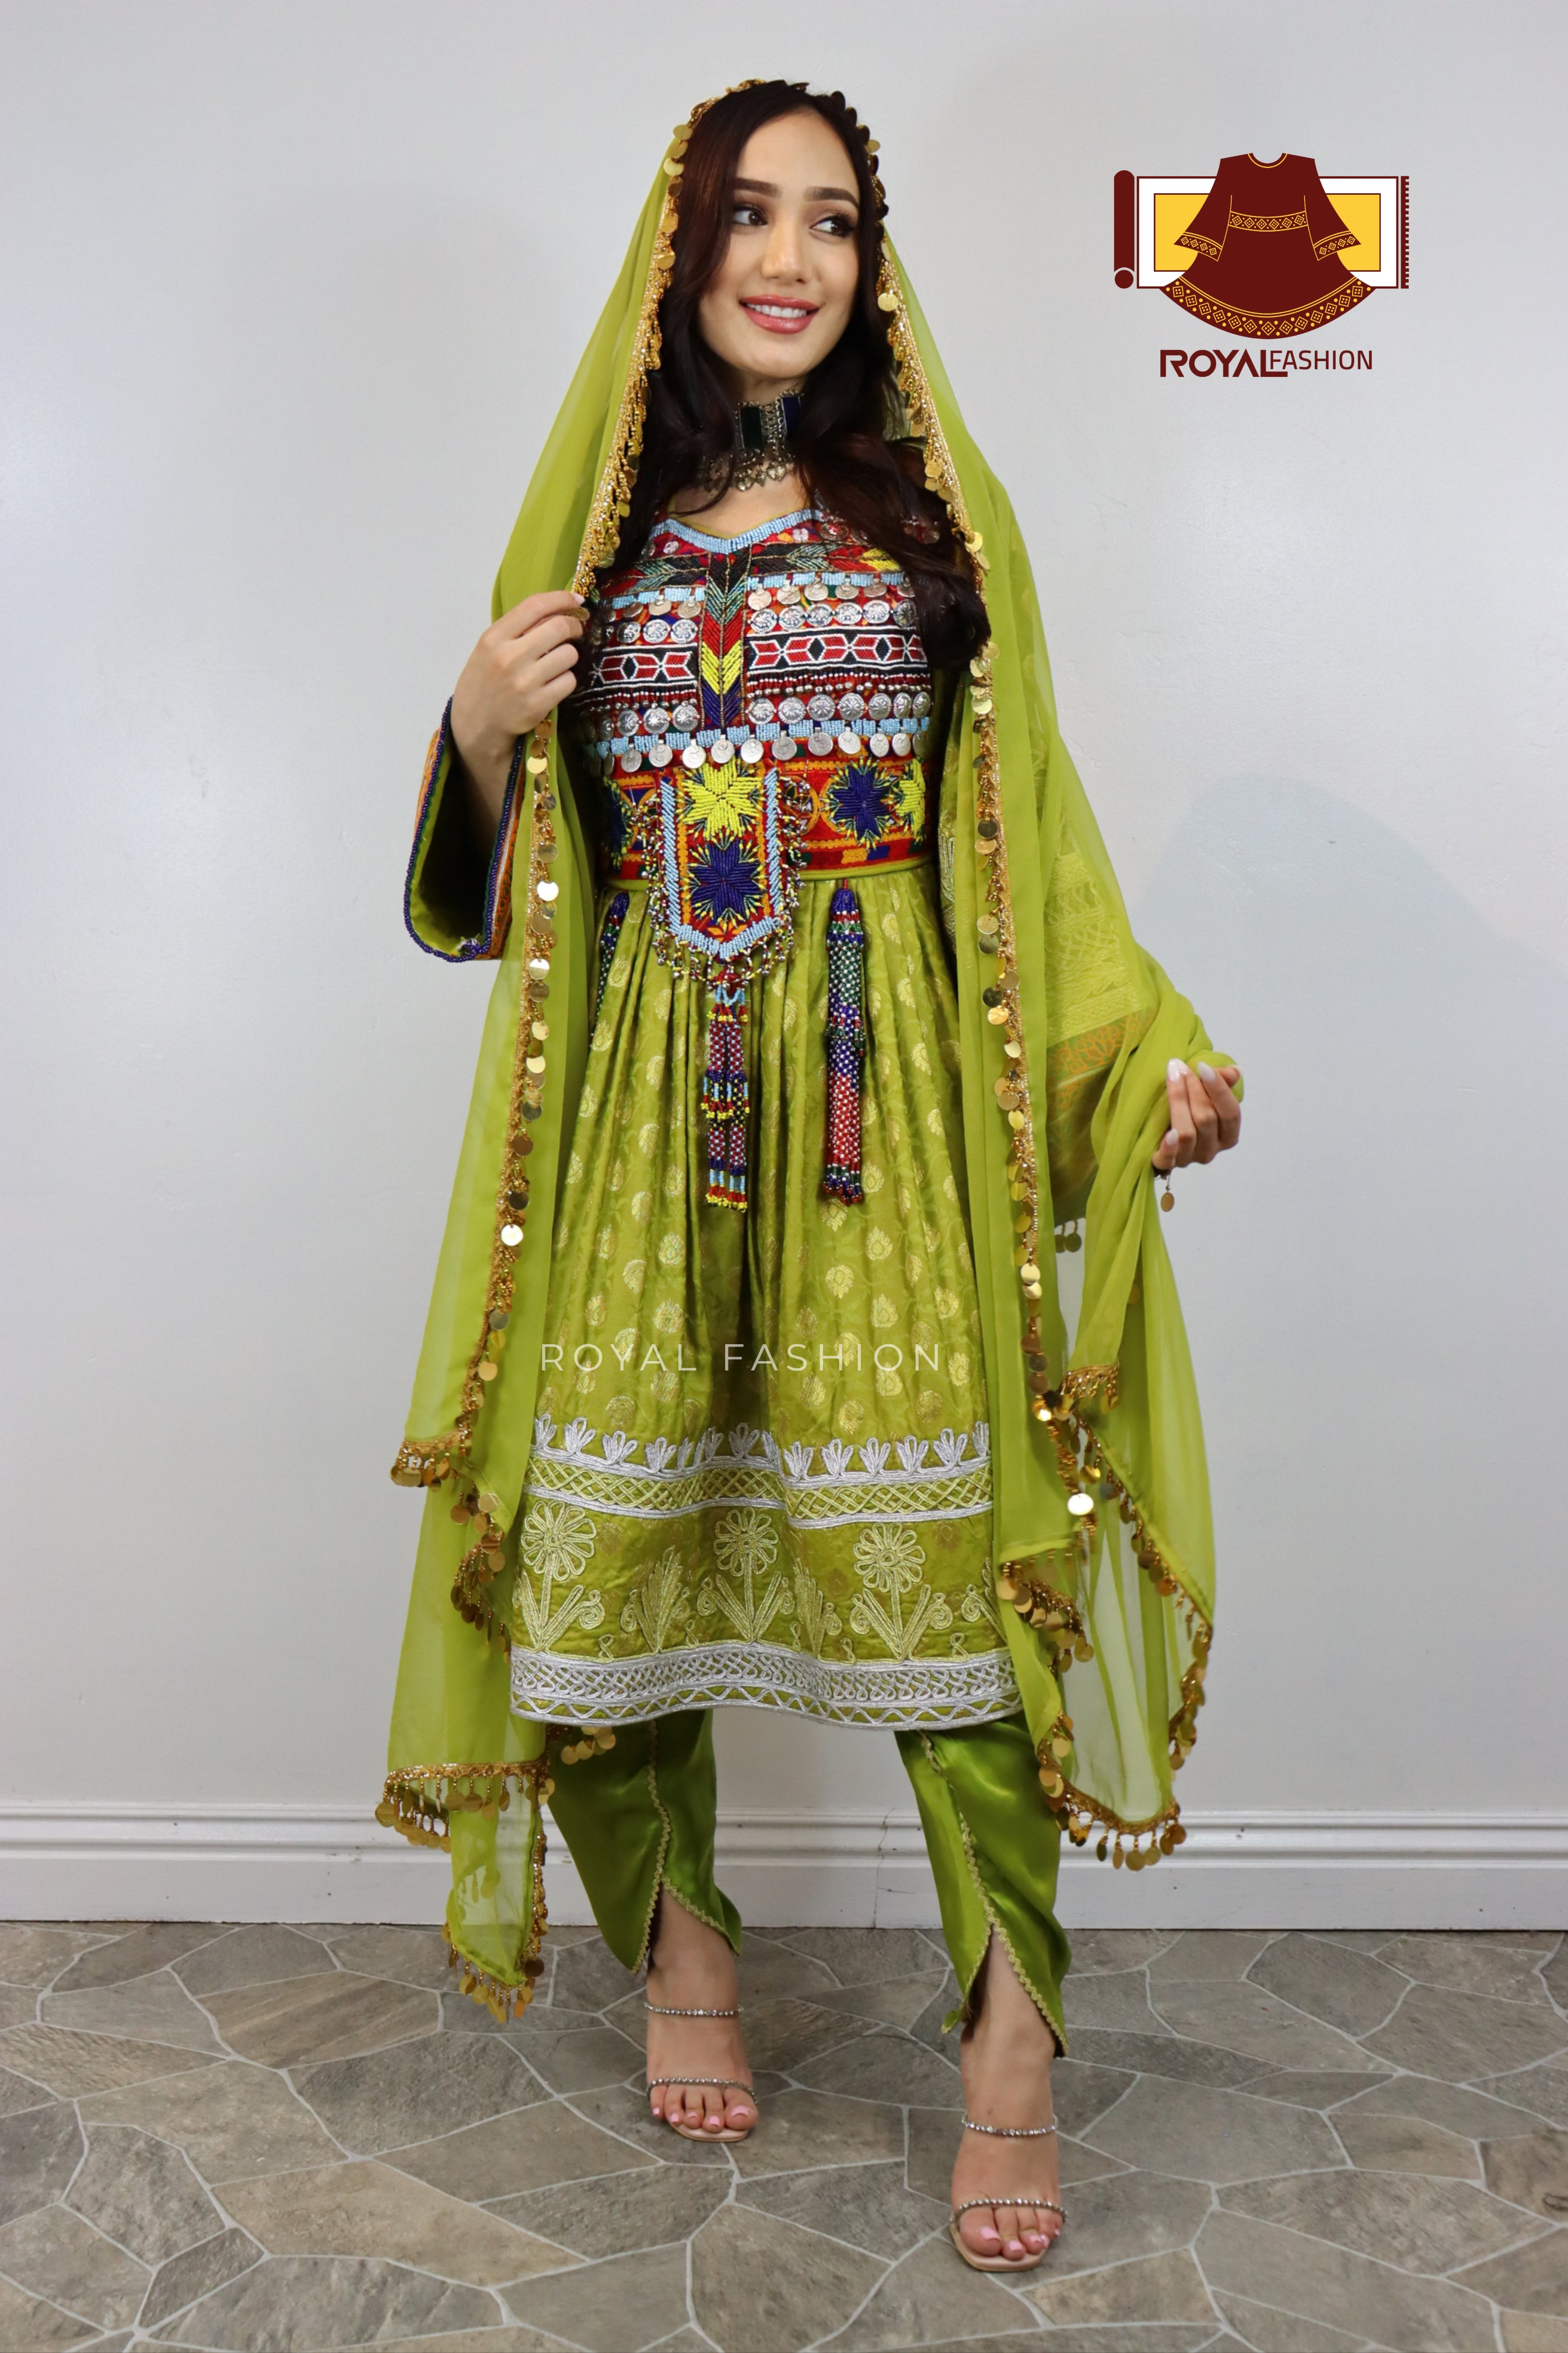 Embroidery Afghani dress for girl - Afghani style dress - Afghani dress for  girl | eBay